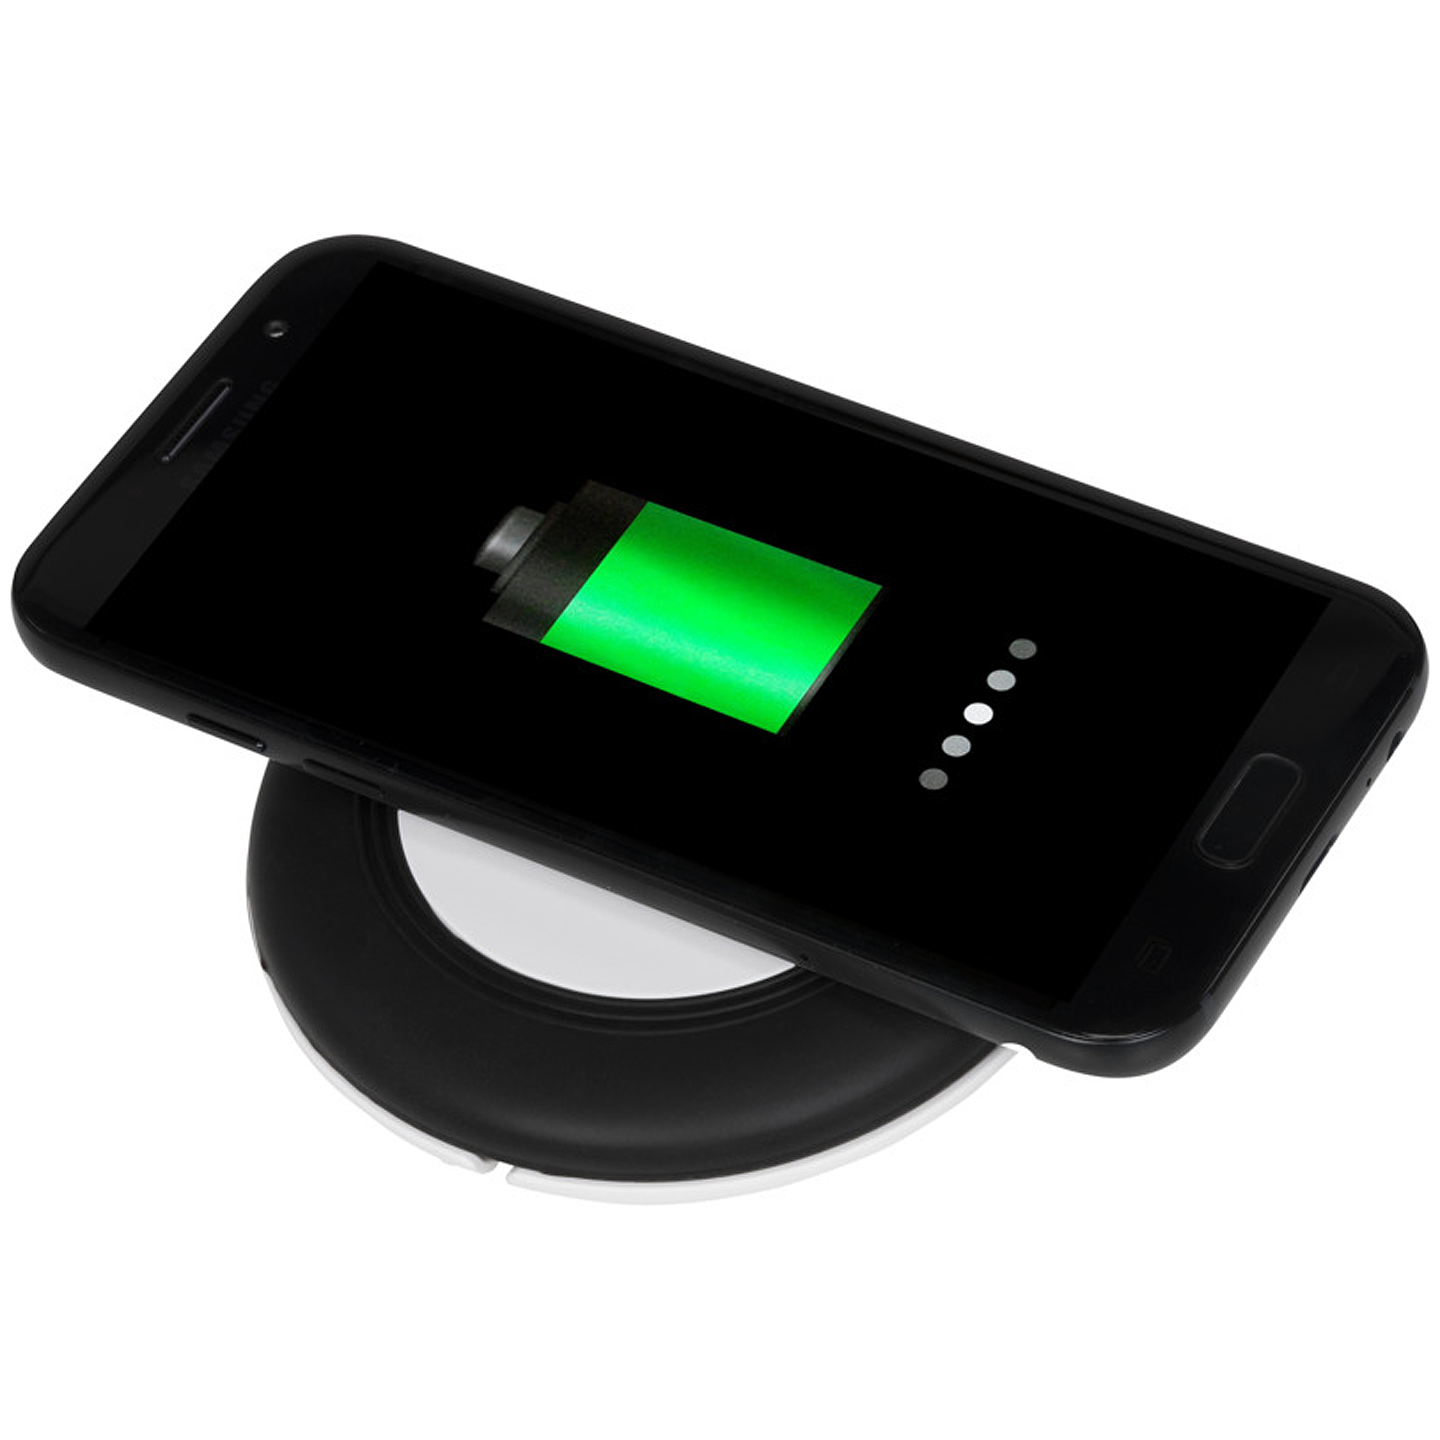 Chargeur induction QI smartphone personnalisé publicitaire Goodie Chargeur QI sans fil smartphone personnalisable